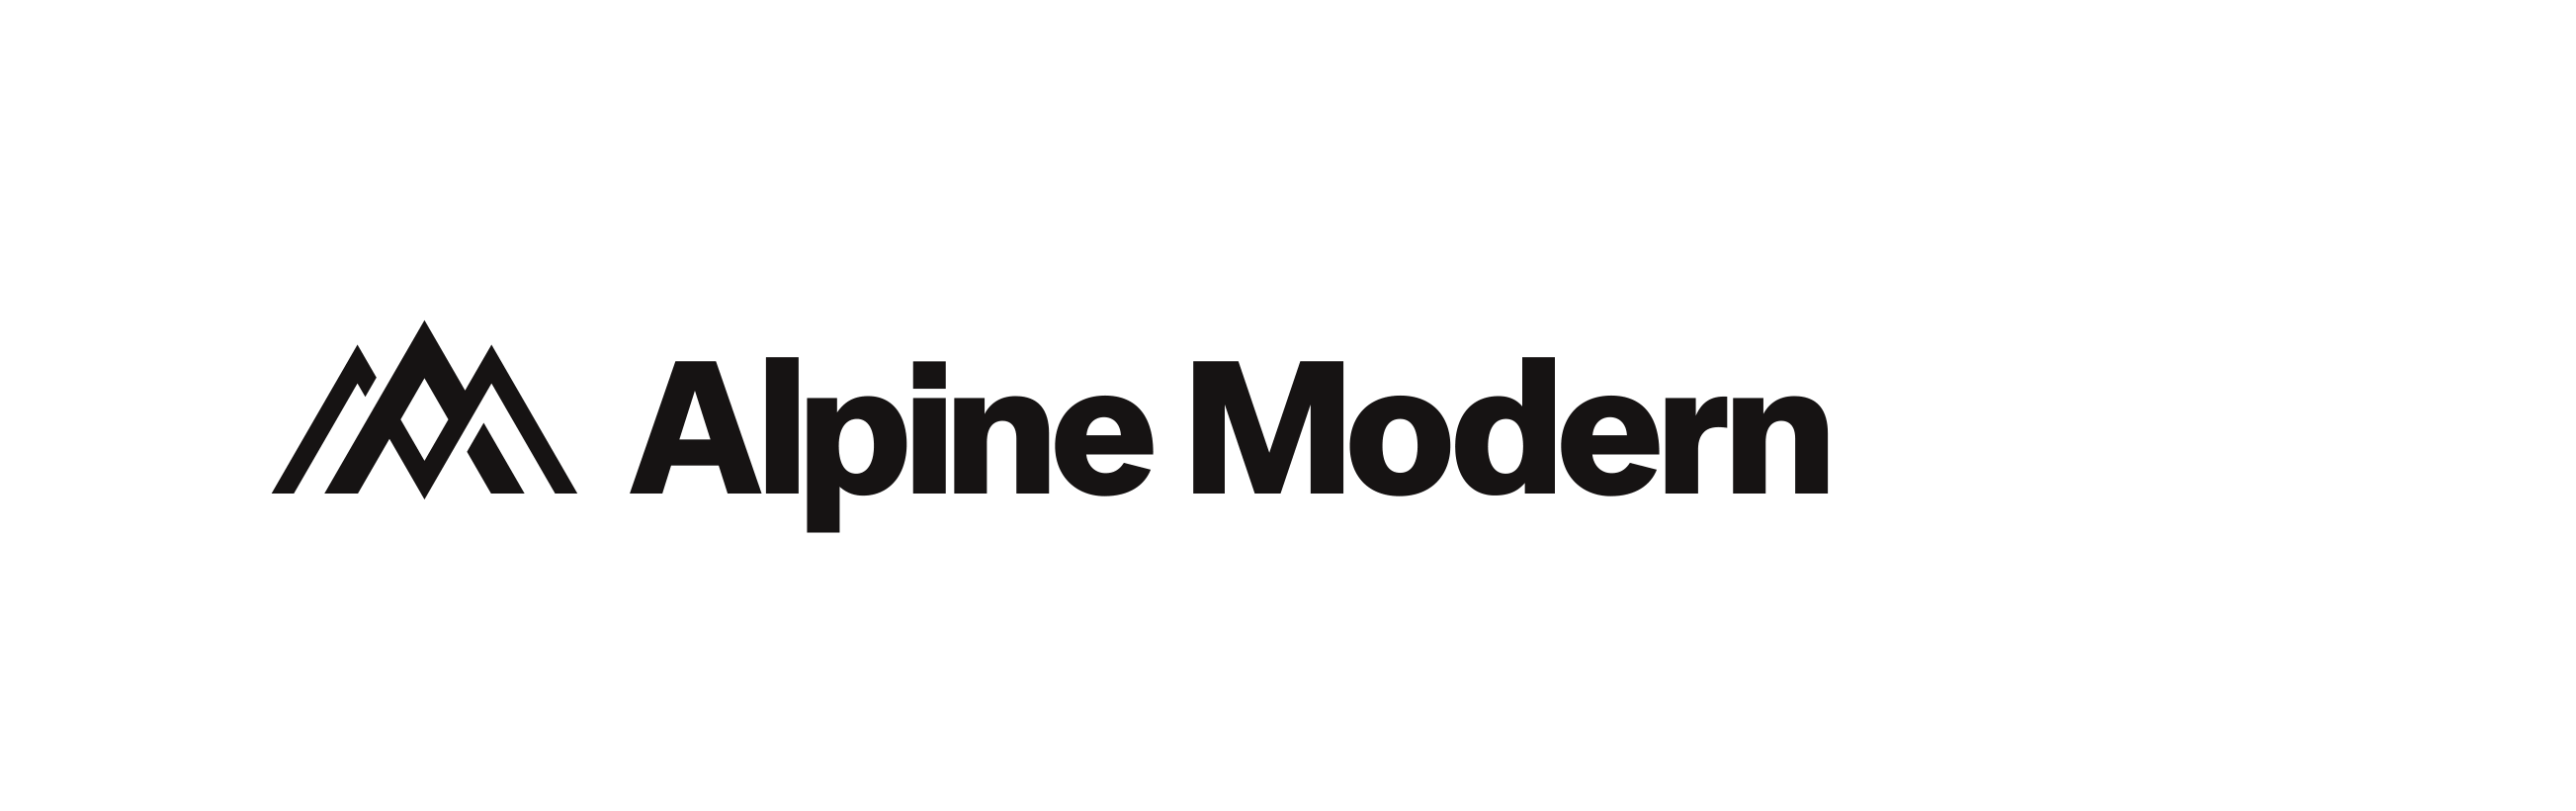 Alpine Modern - alpine modern wordmark system